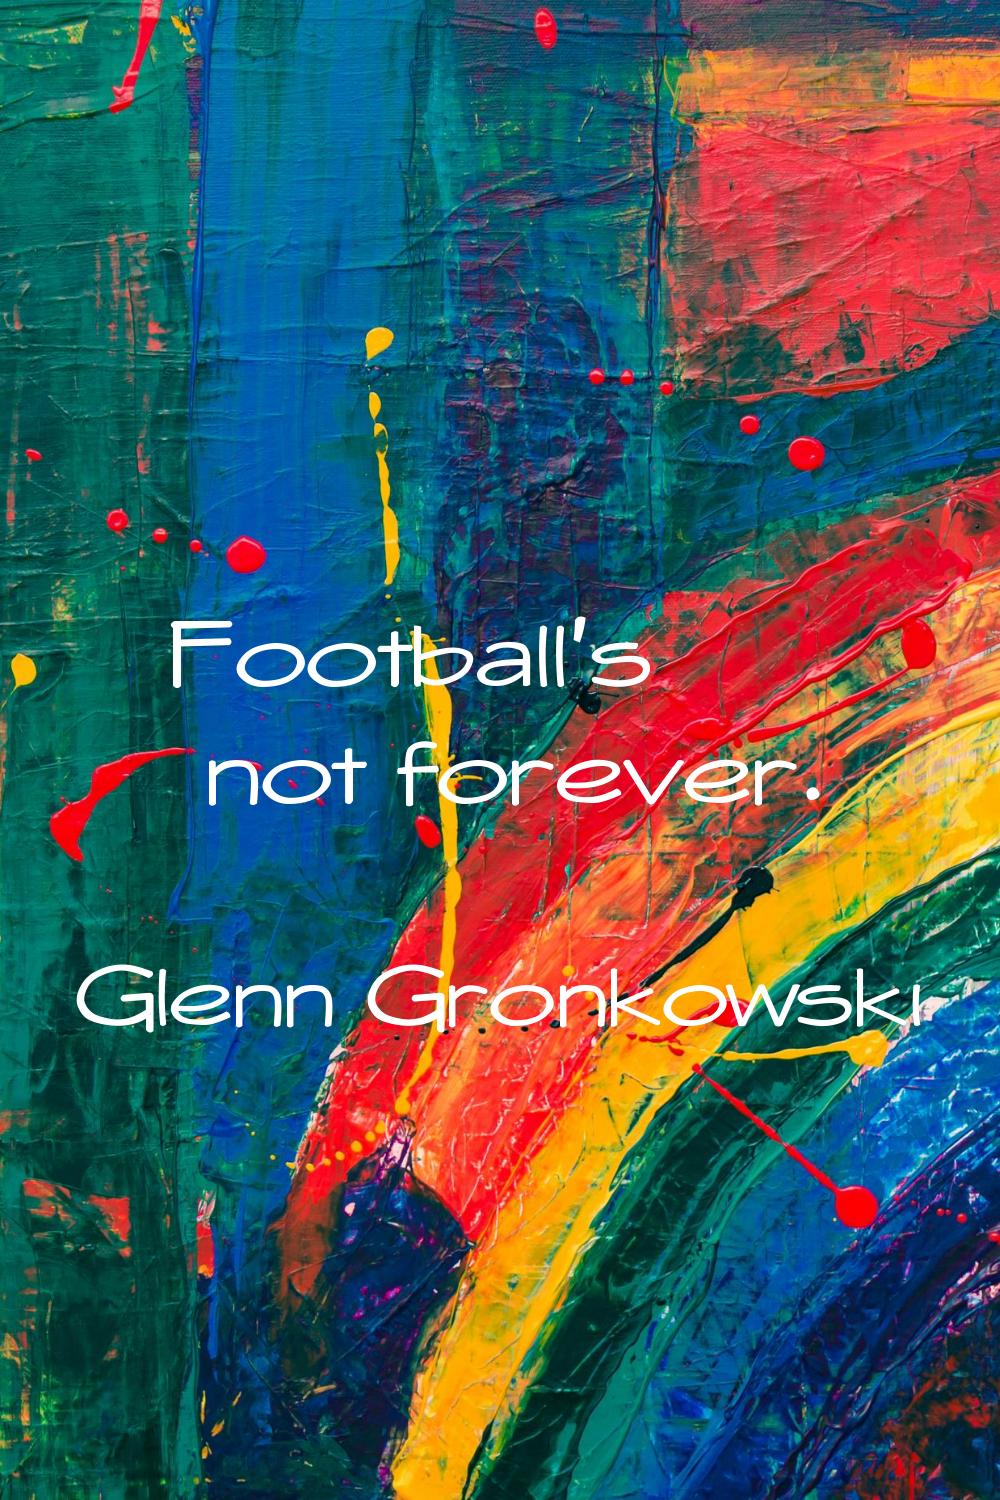 Football's not forever.